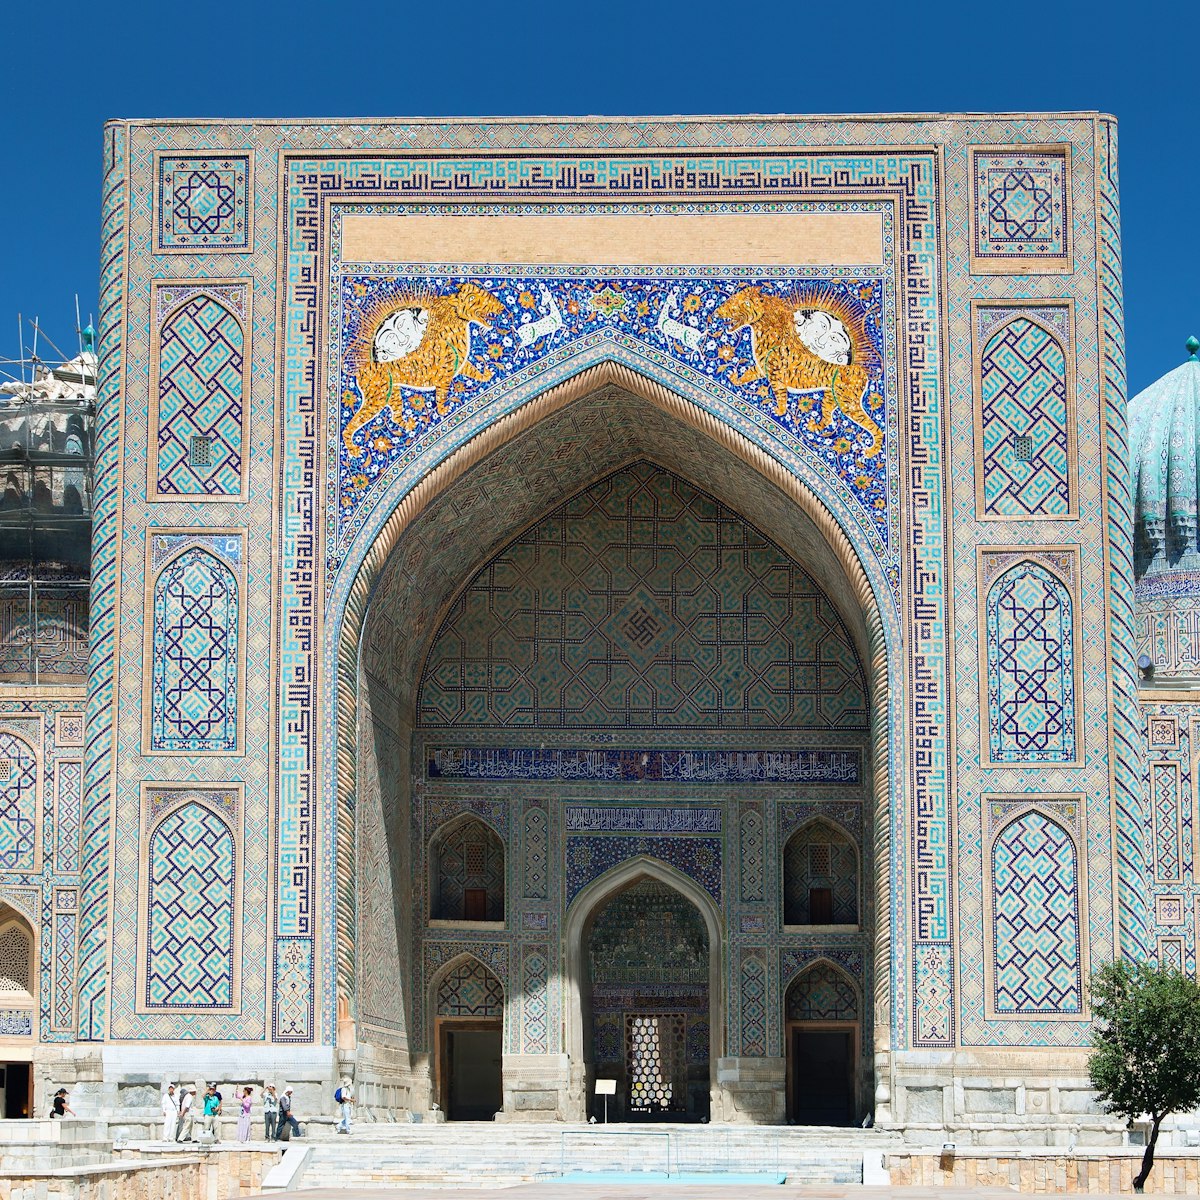 View of Sher Dor Medressa - Registan - Samarkand - Uzbekistan; Shutterstock ID 189546986; purchase_order: 65050; job: ; client: ; other:
189546986